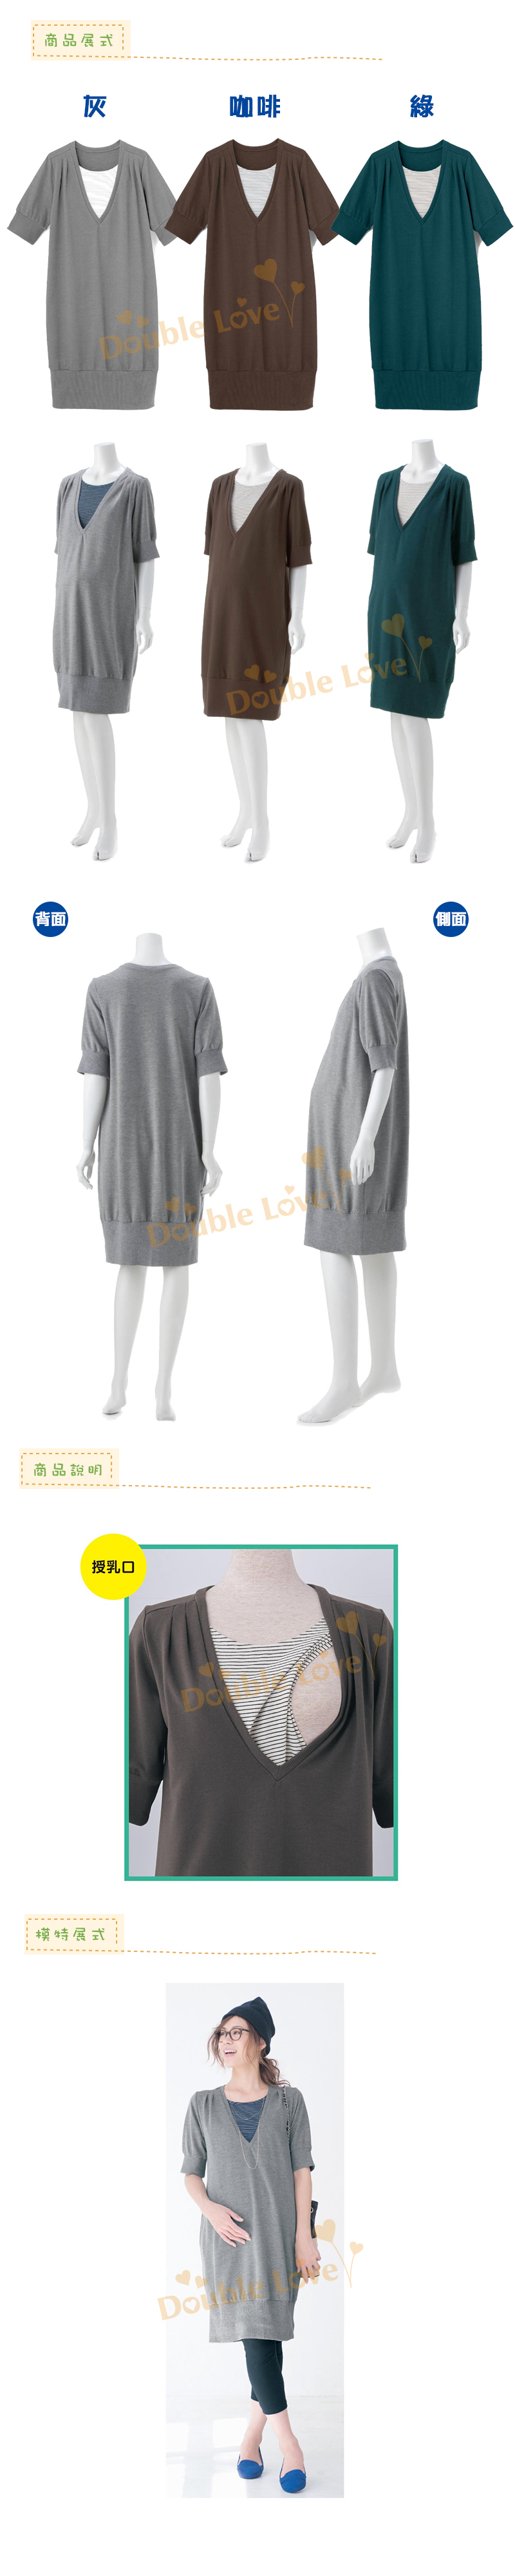 【BA0001】純棉短袖產前孕婦裝/產後哺乳衣兩穿服(哺乳衣/孕婦裙)